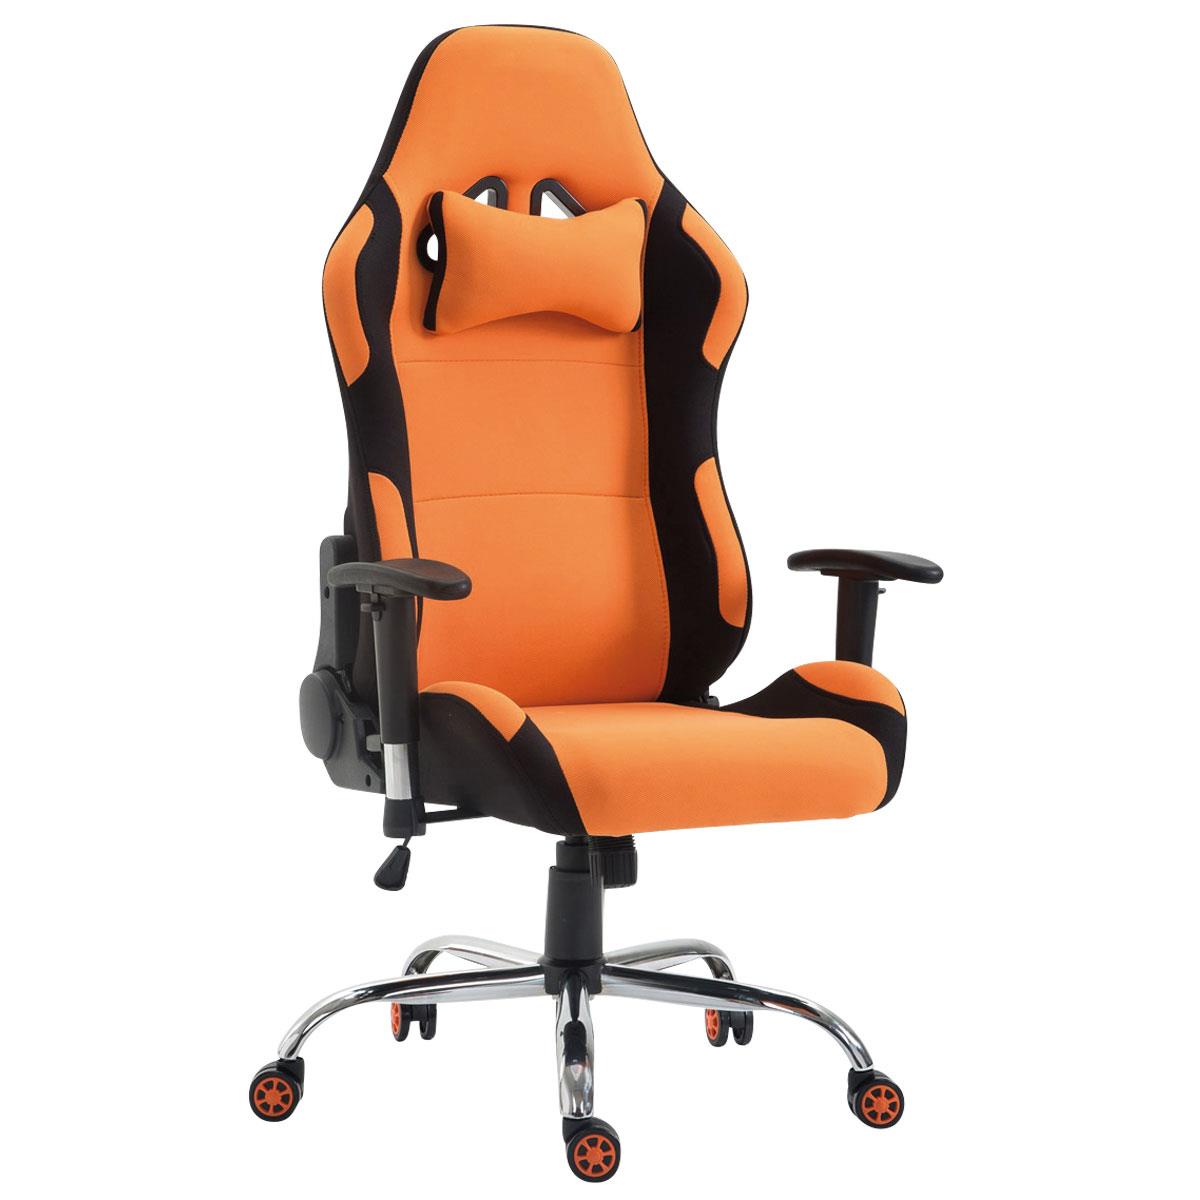 Gaming-Stuhl ROSBY STOFF. Sportliches Design und hoher Komfort, Farbe Orange